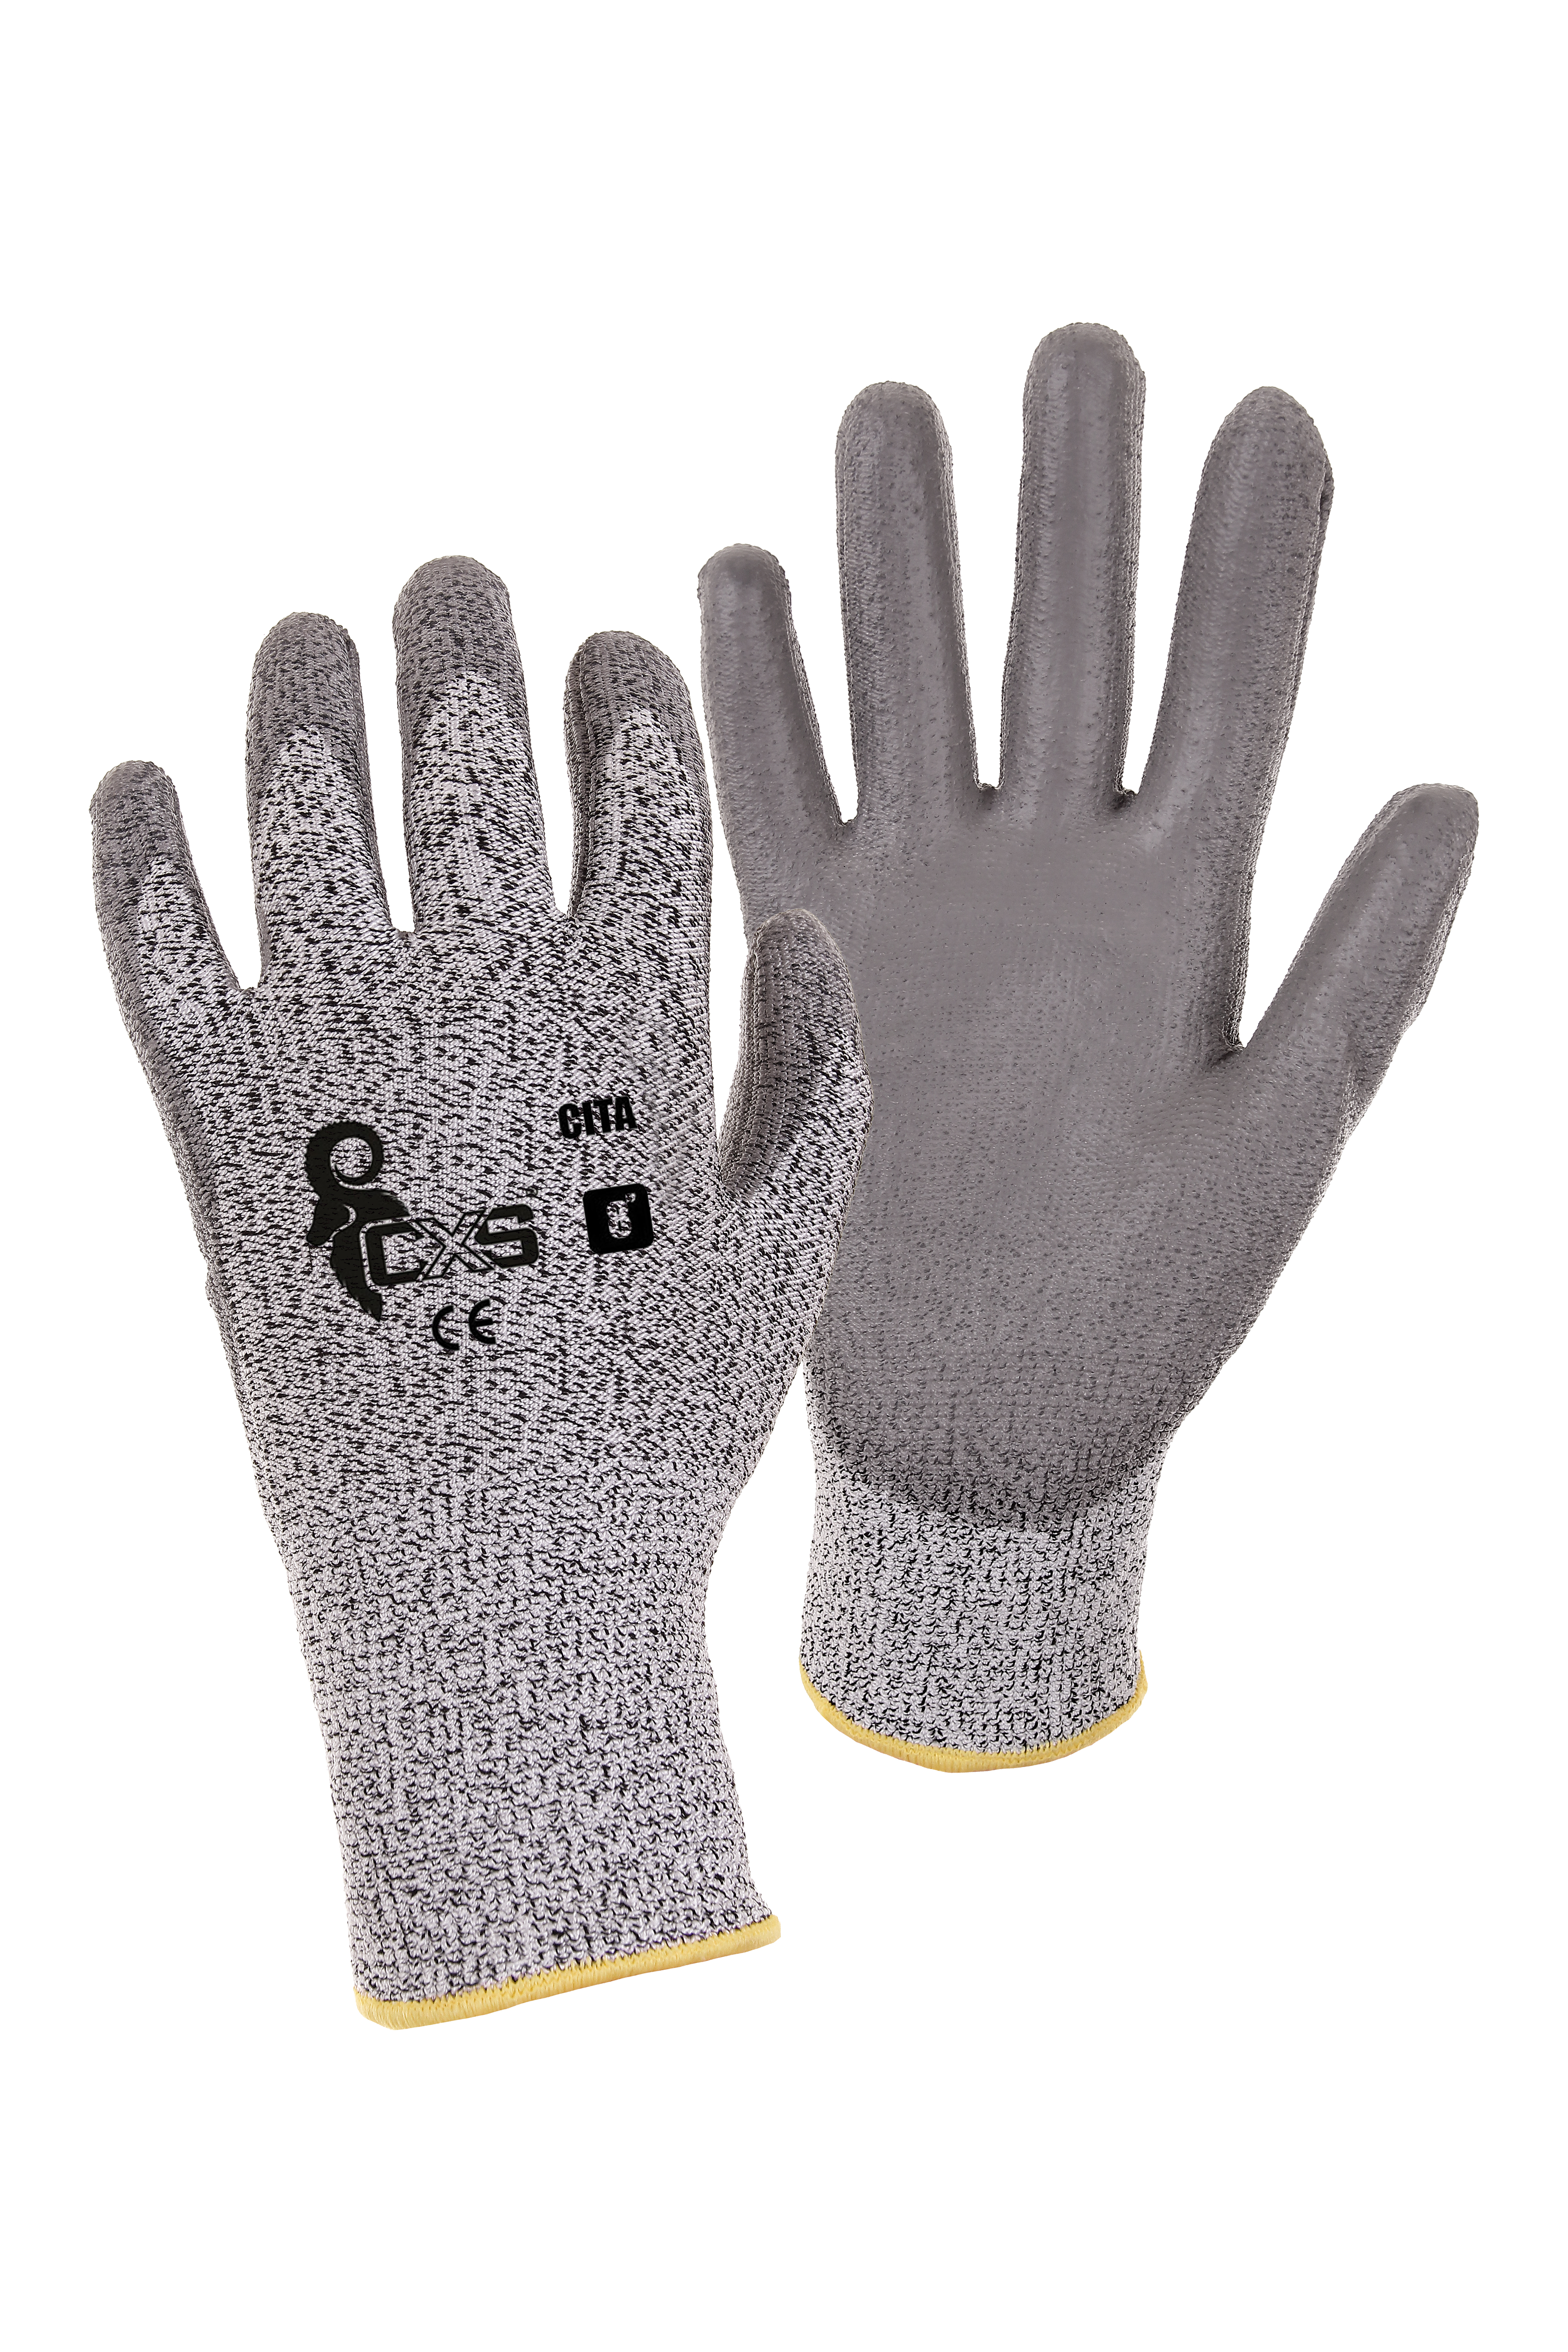 rukavice CITA, protipořezové, šedé, velikost 6 0.04 Kg TOP Sklad4 606056 30